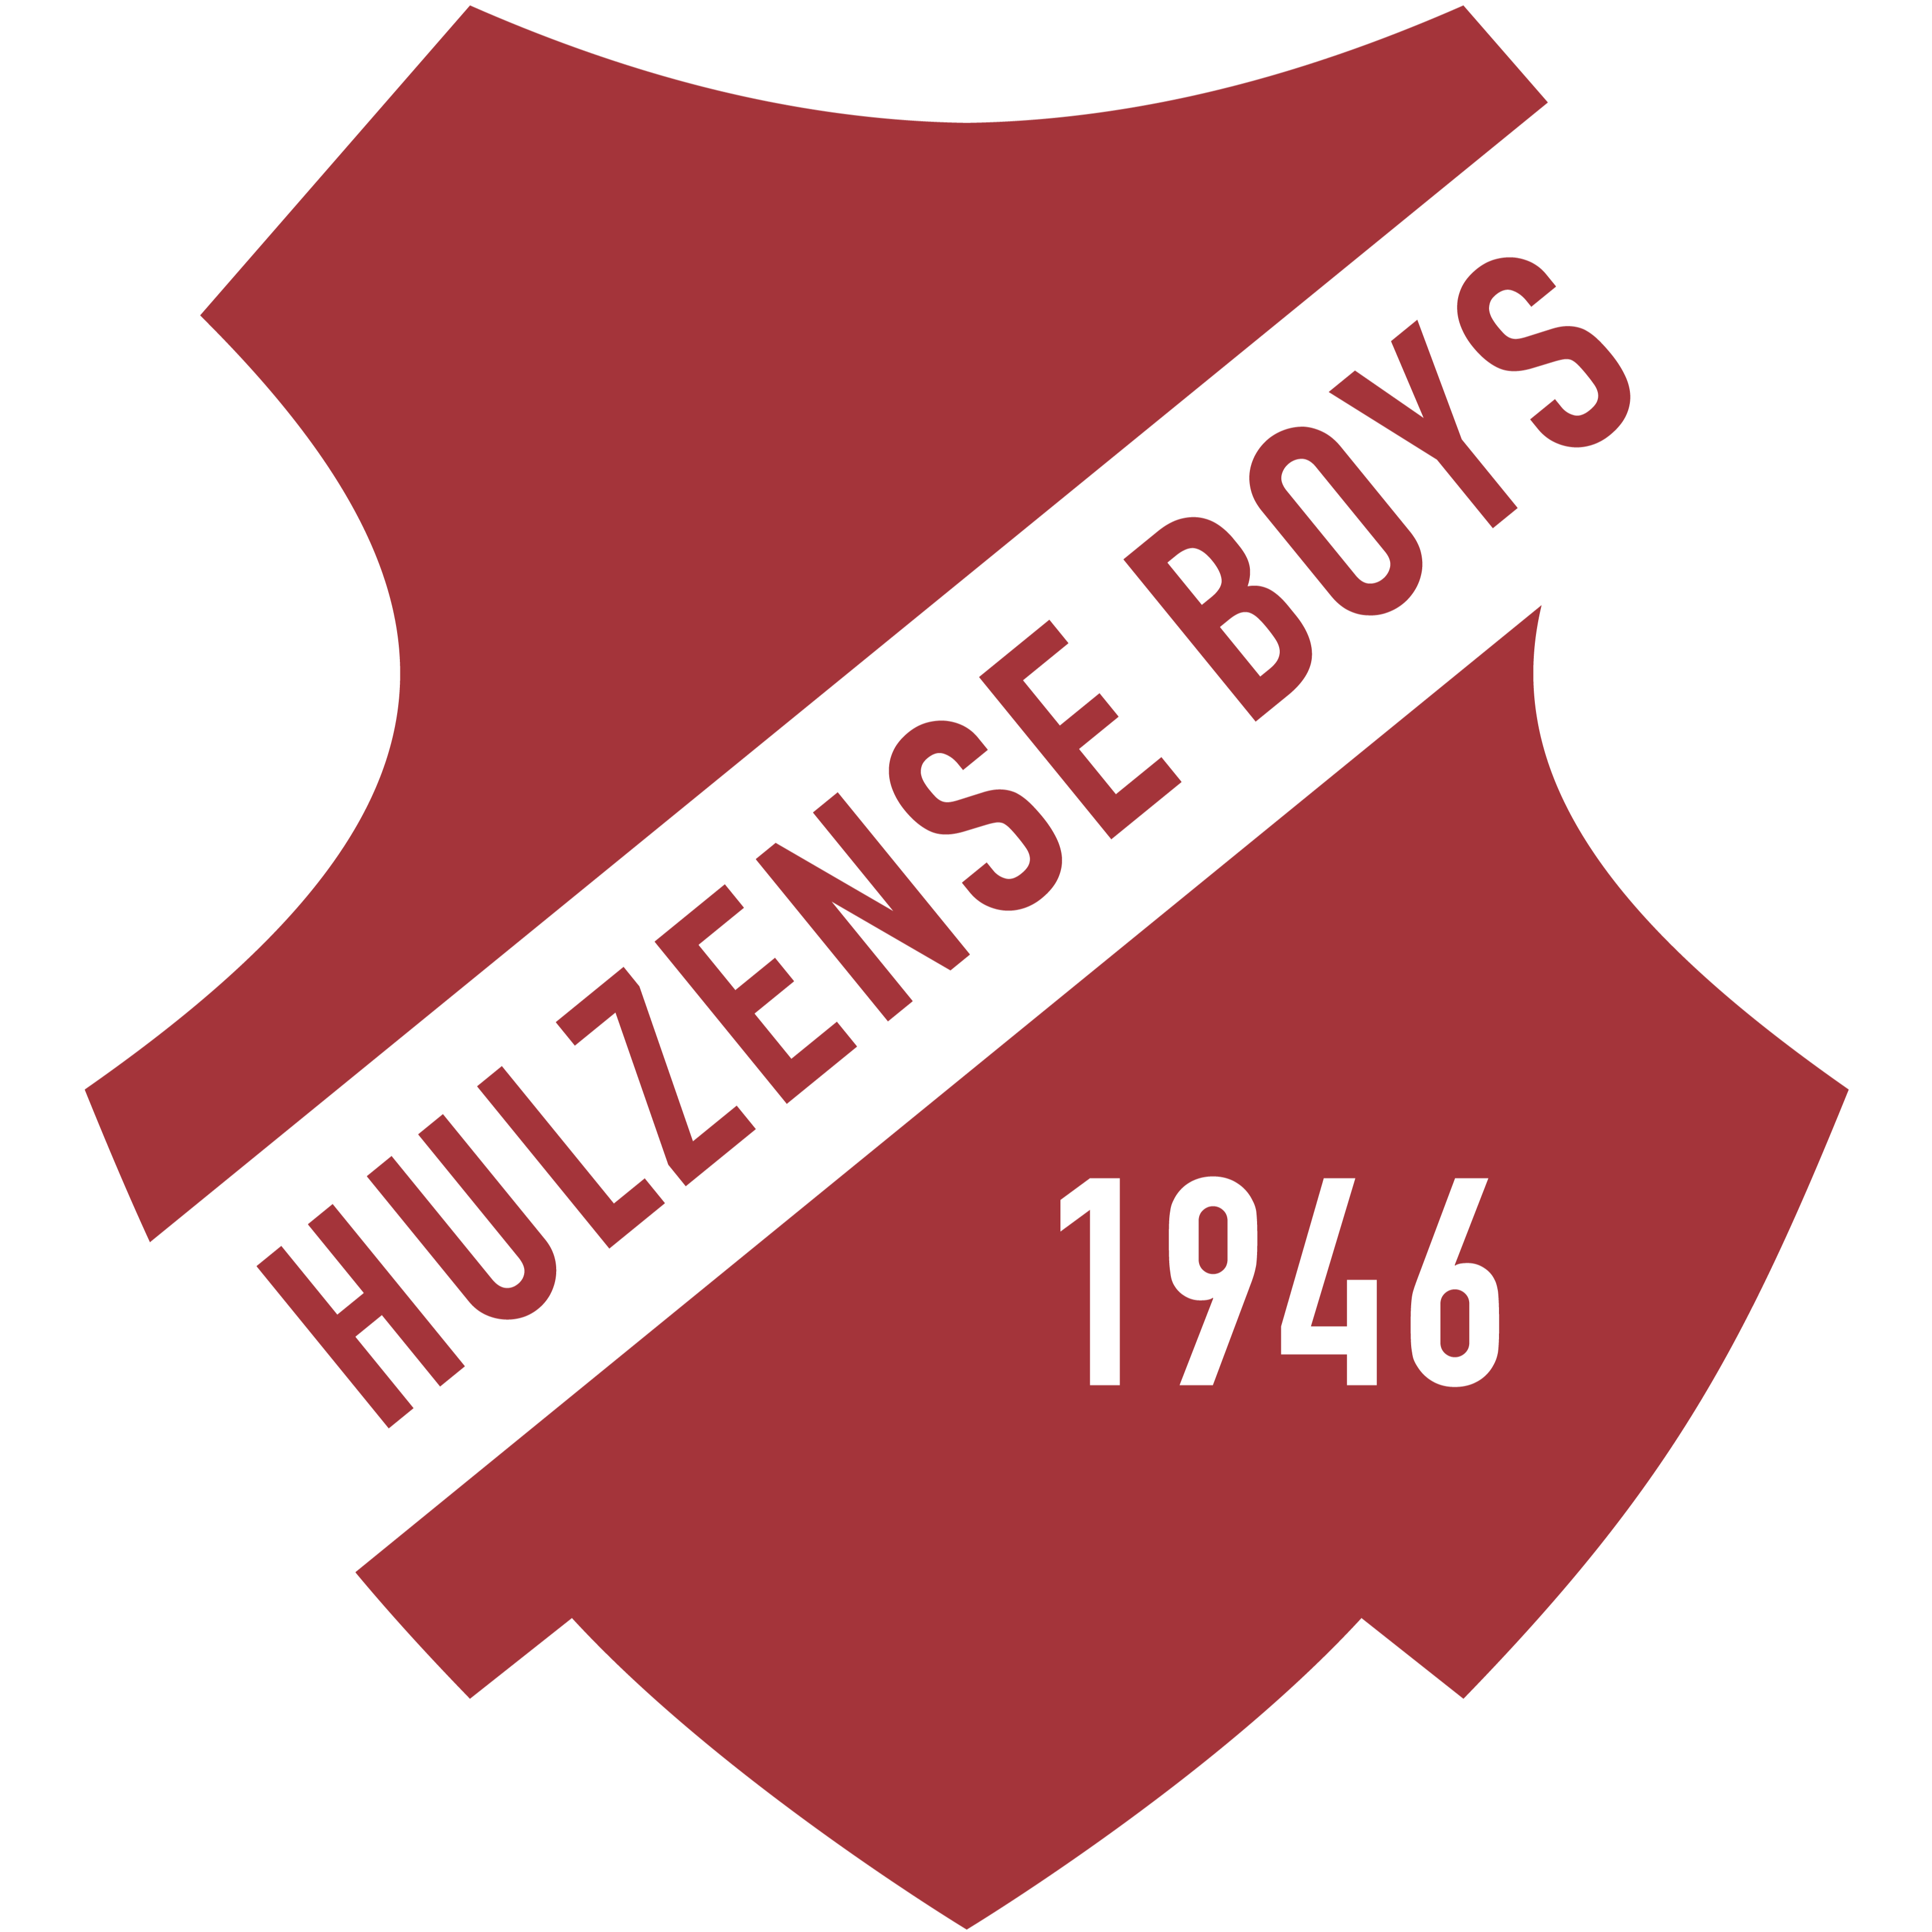 V.V. Hulzense Boys